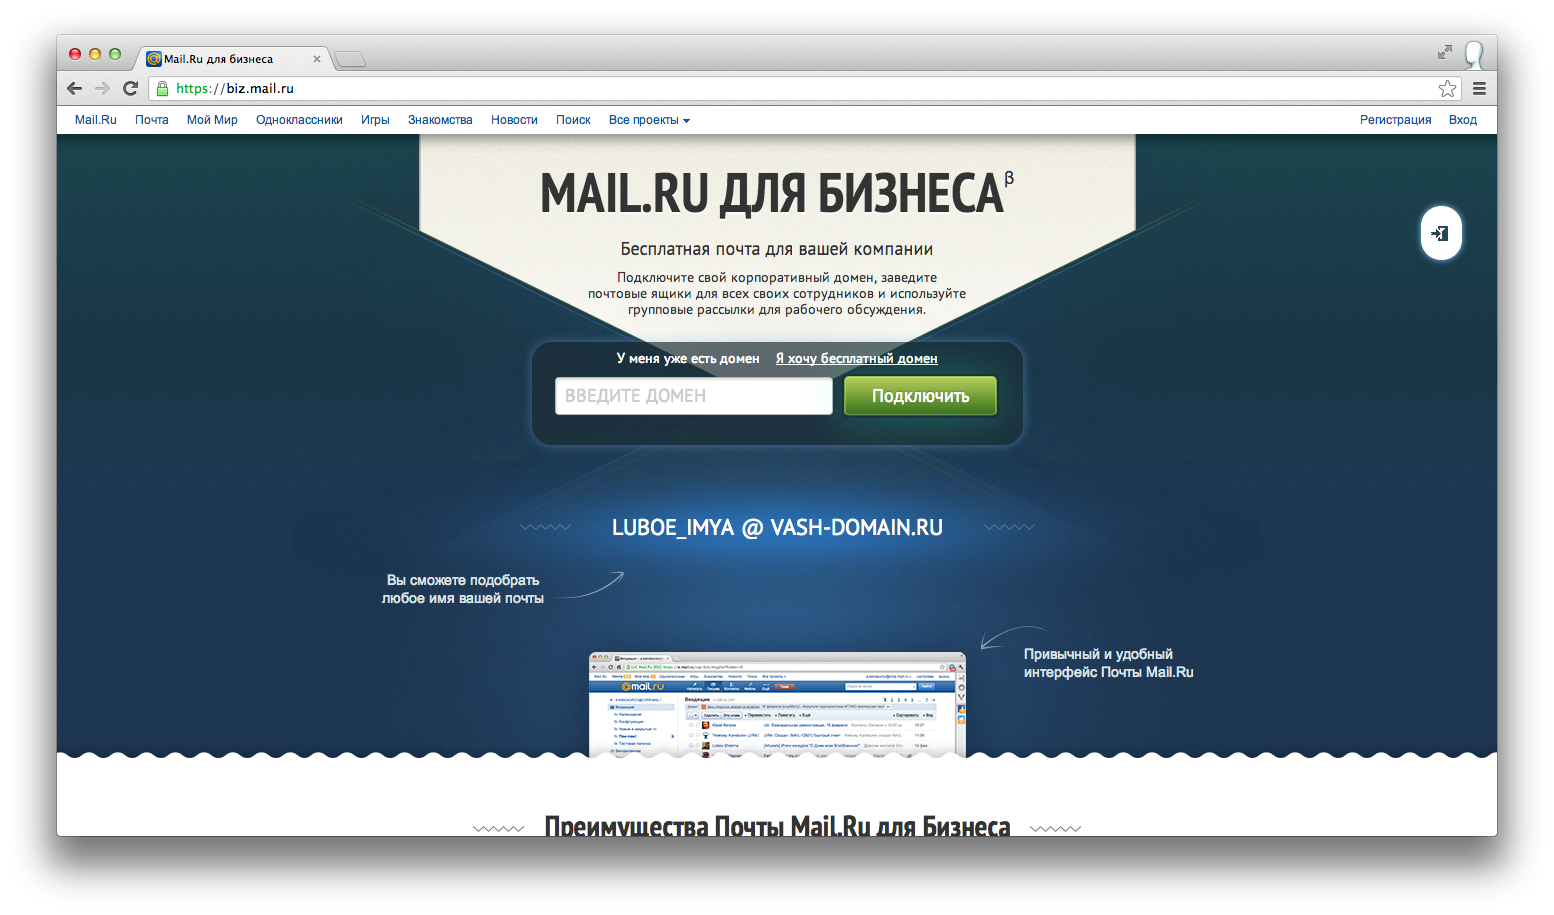 Mail.Ru для бизнеса: как все устроено